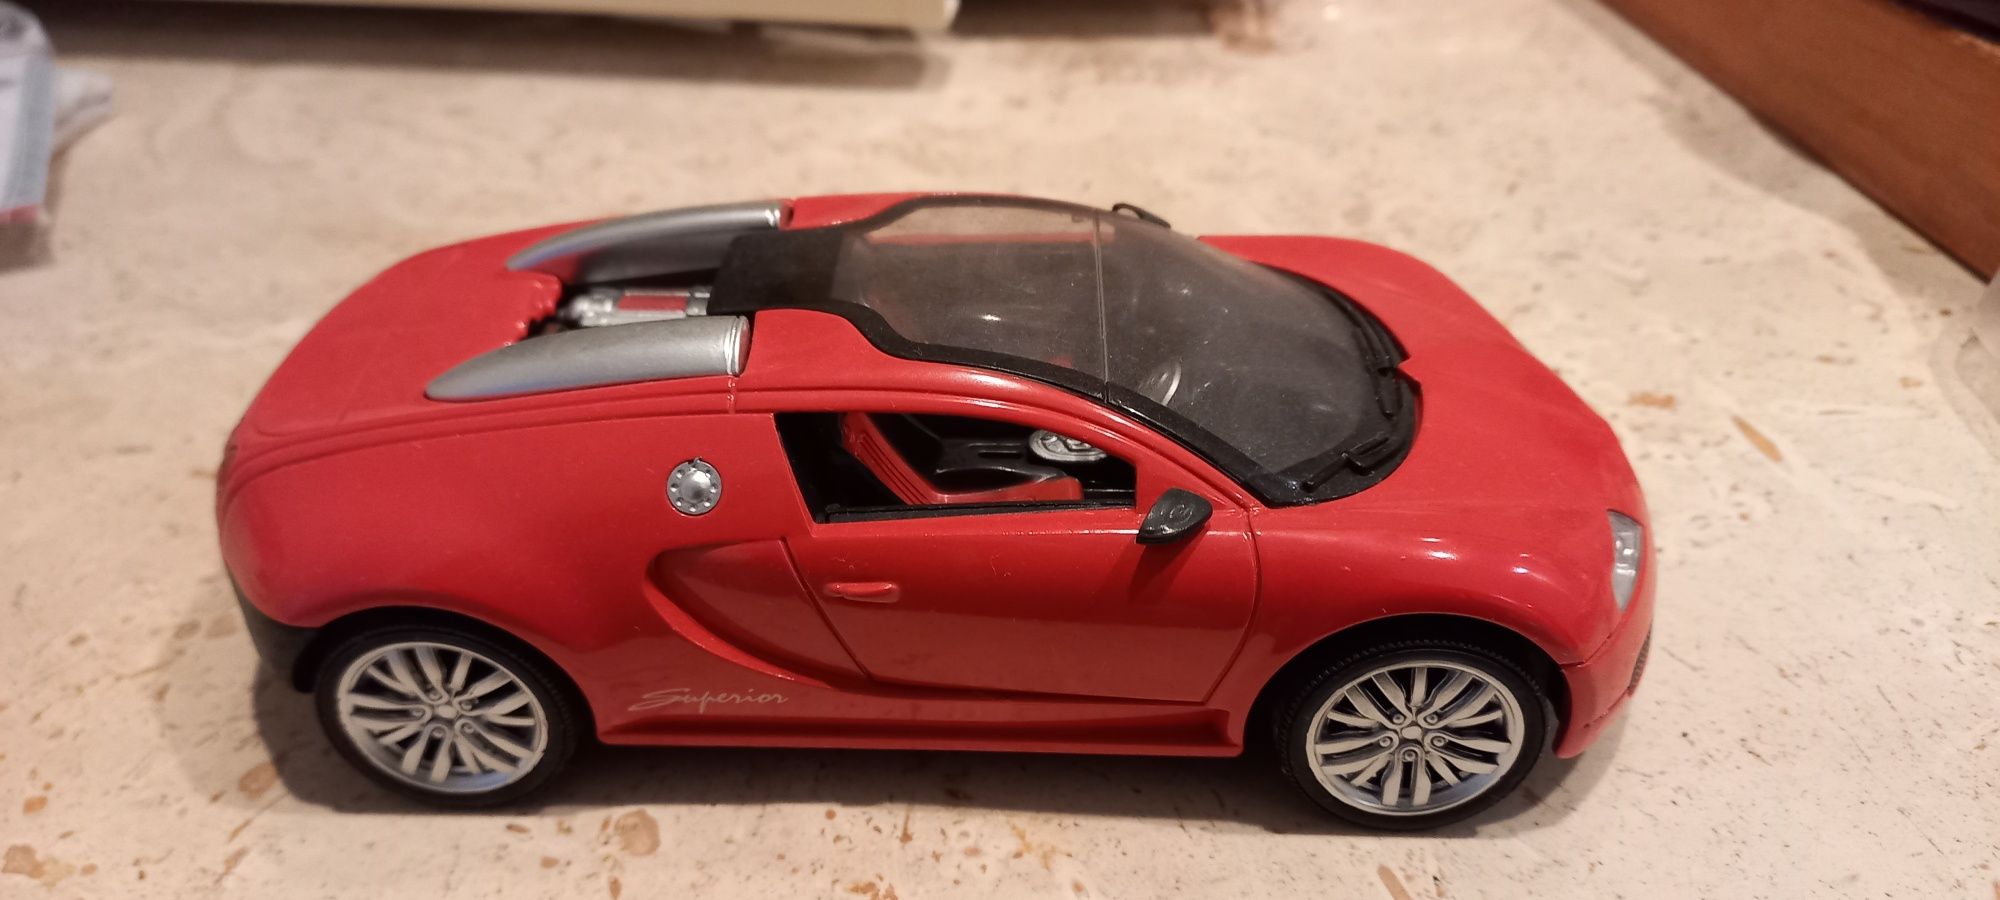 Macheta Bugatti Veyron scara 1/24